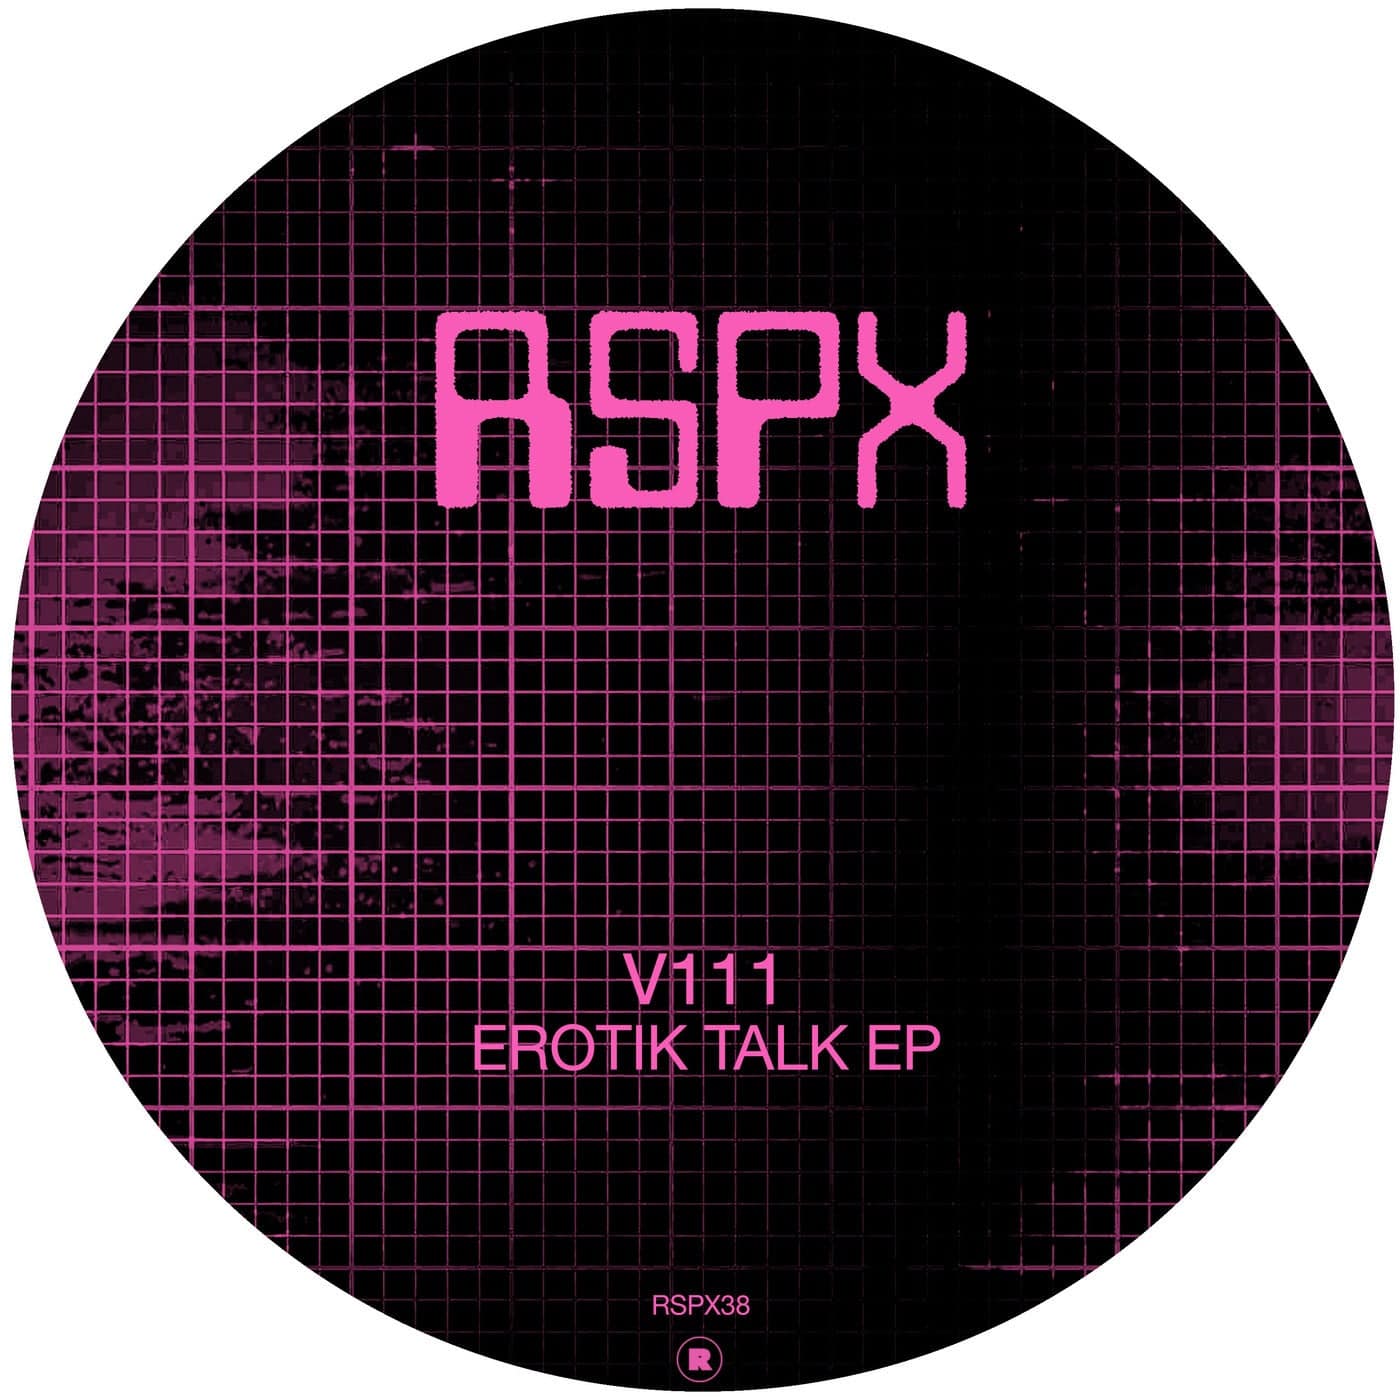 image cover: V111 - Erotik Talk EP / RSPX38